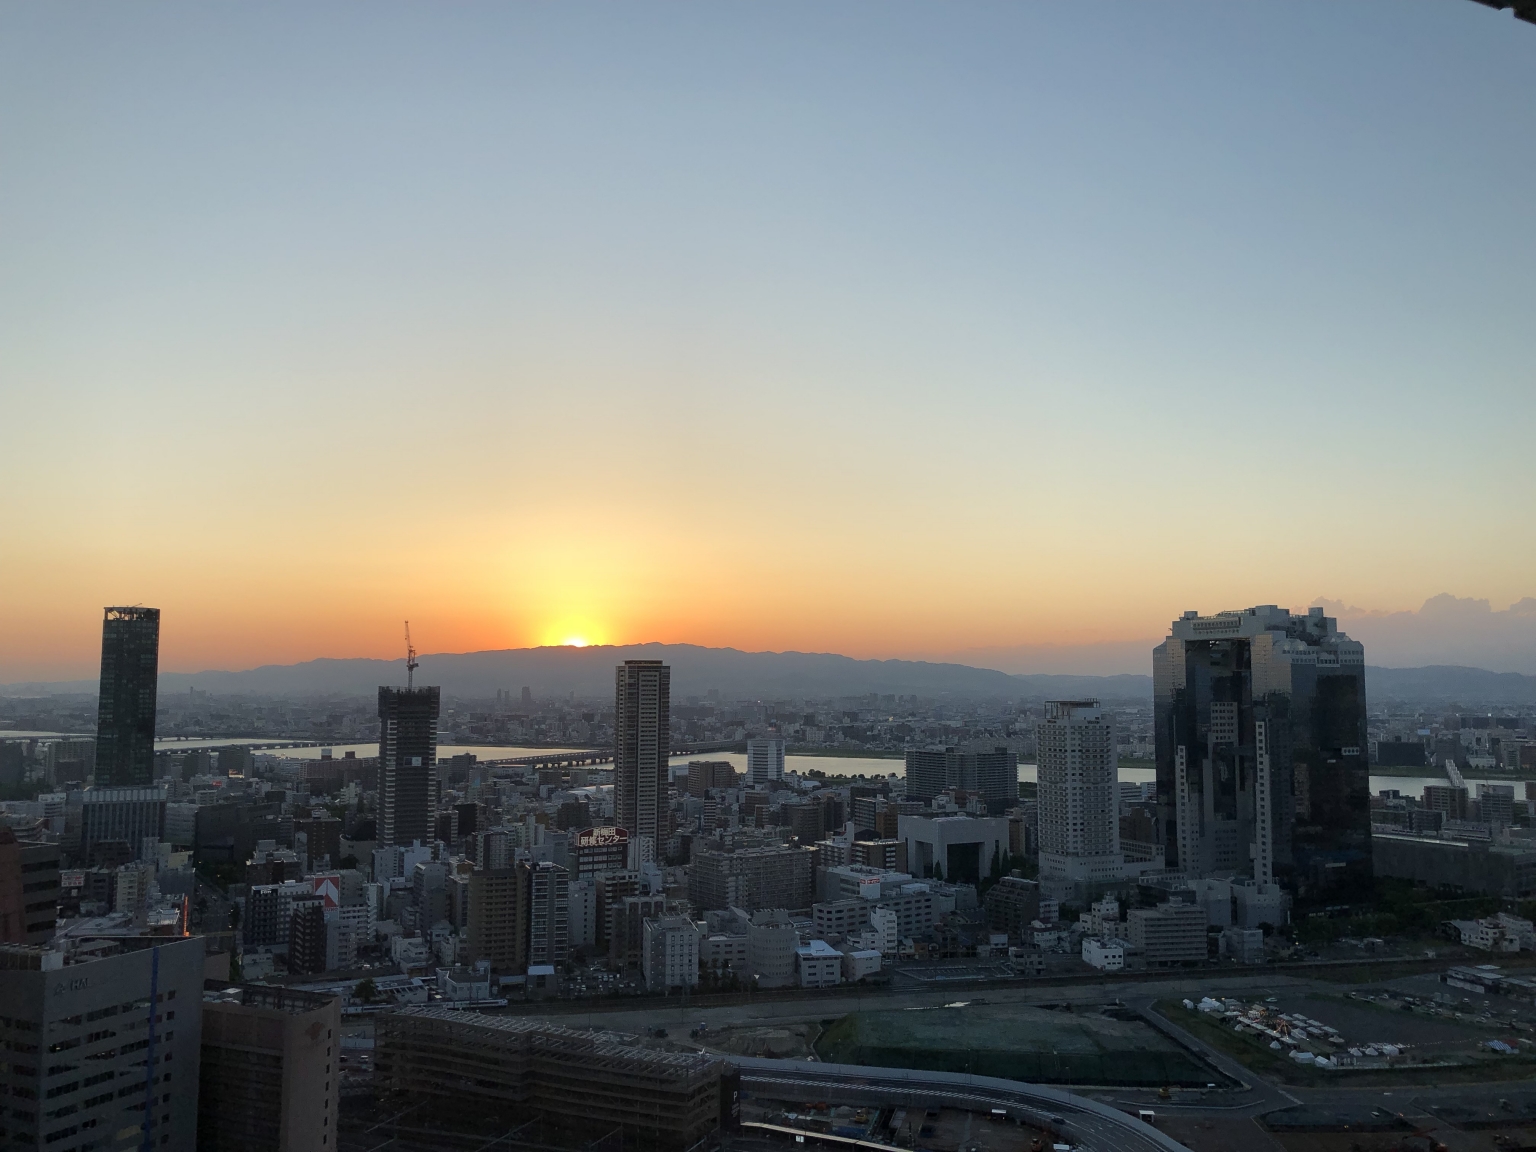 Sunset over Osaka